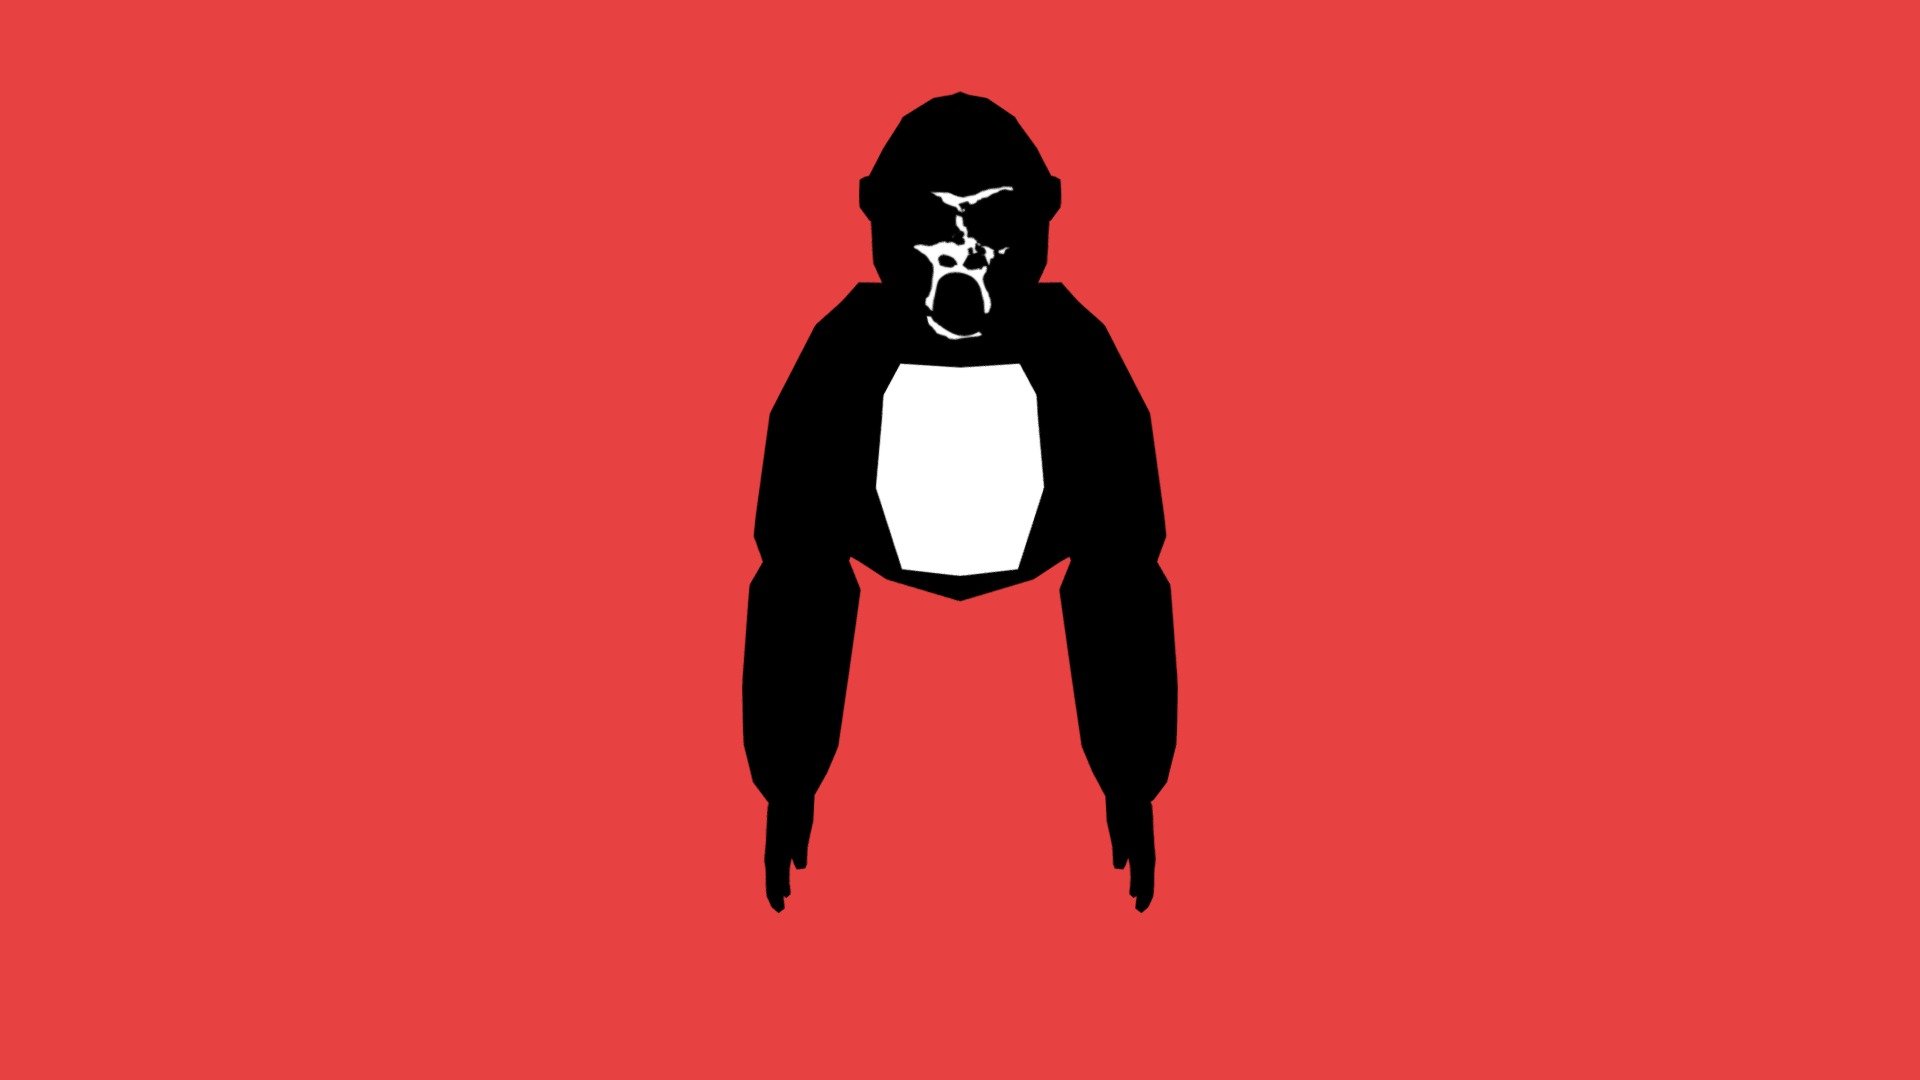 Cursed Gorilla Tag monkey - 3D model by ZilverBoi (@sebbehund09) [8ab6796]